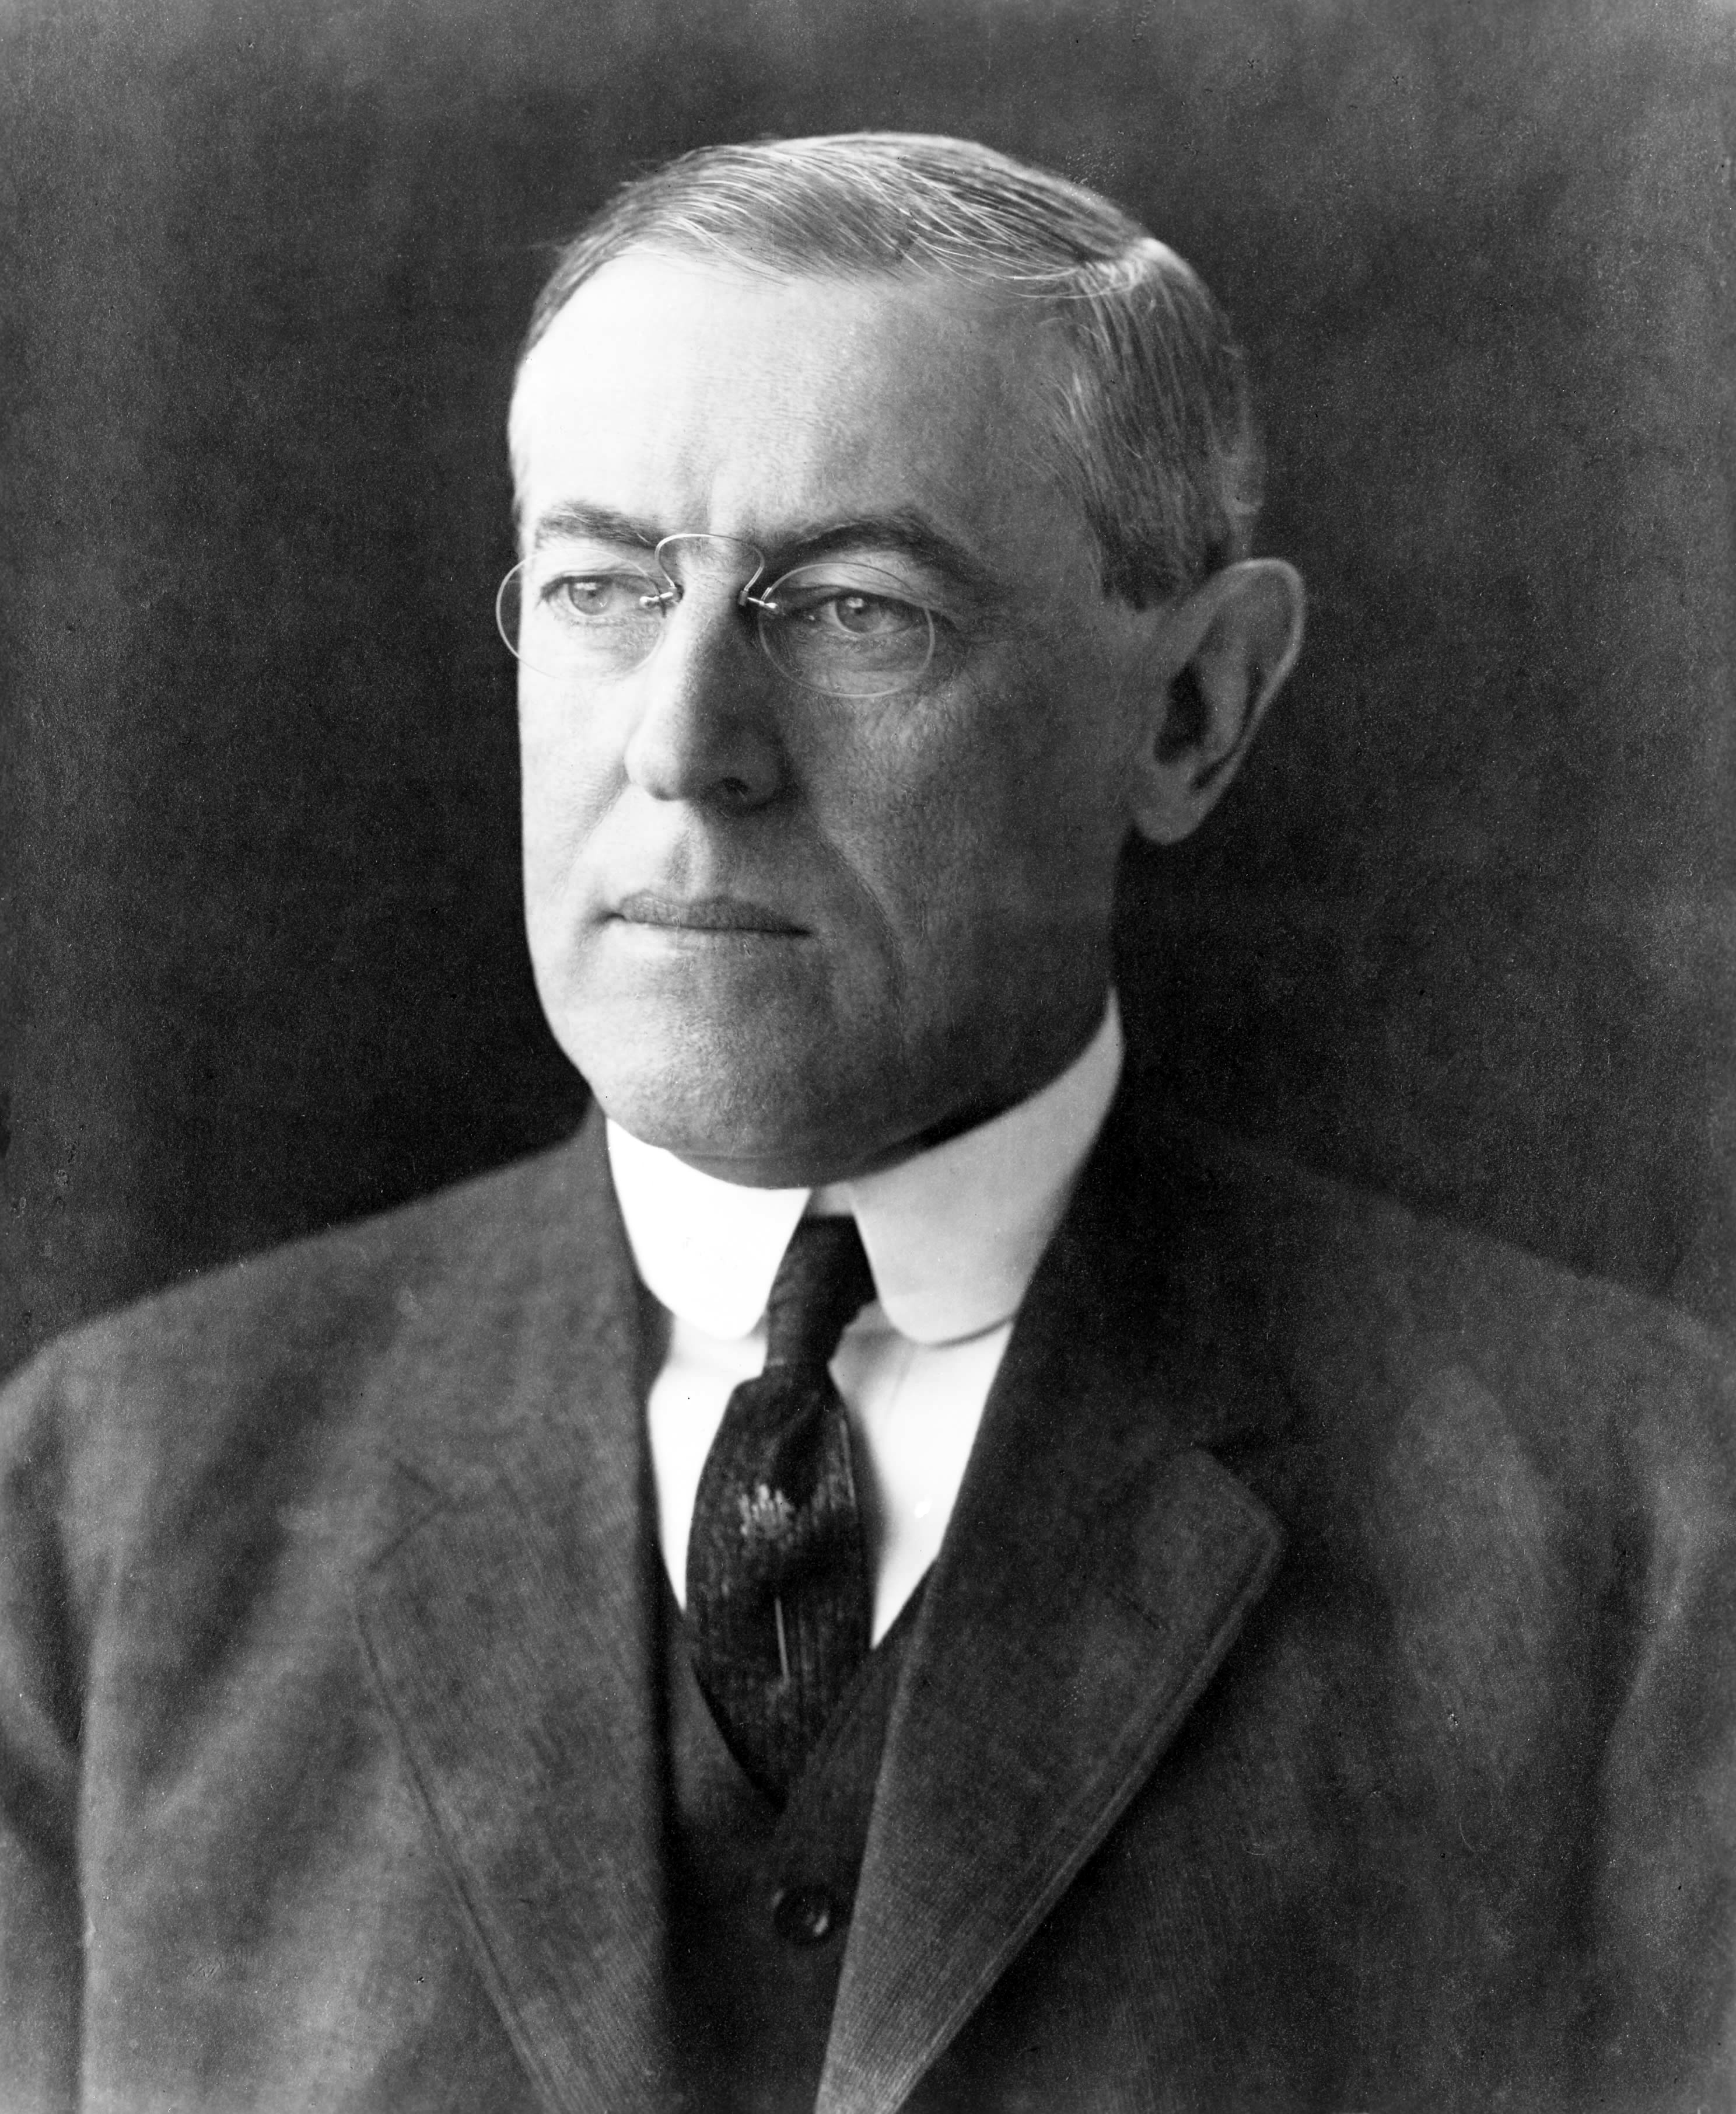 File:President Woodrow Wilson portrait December 2 1912.jpg - Wikimedia ...